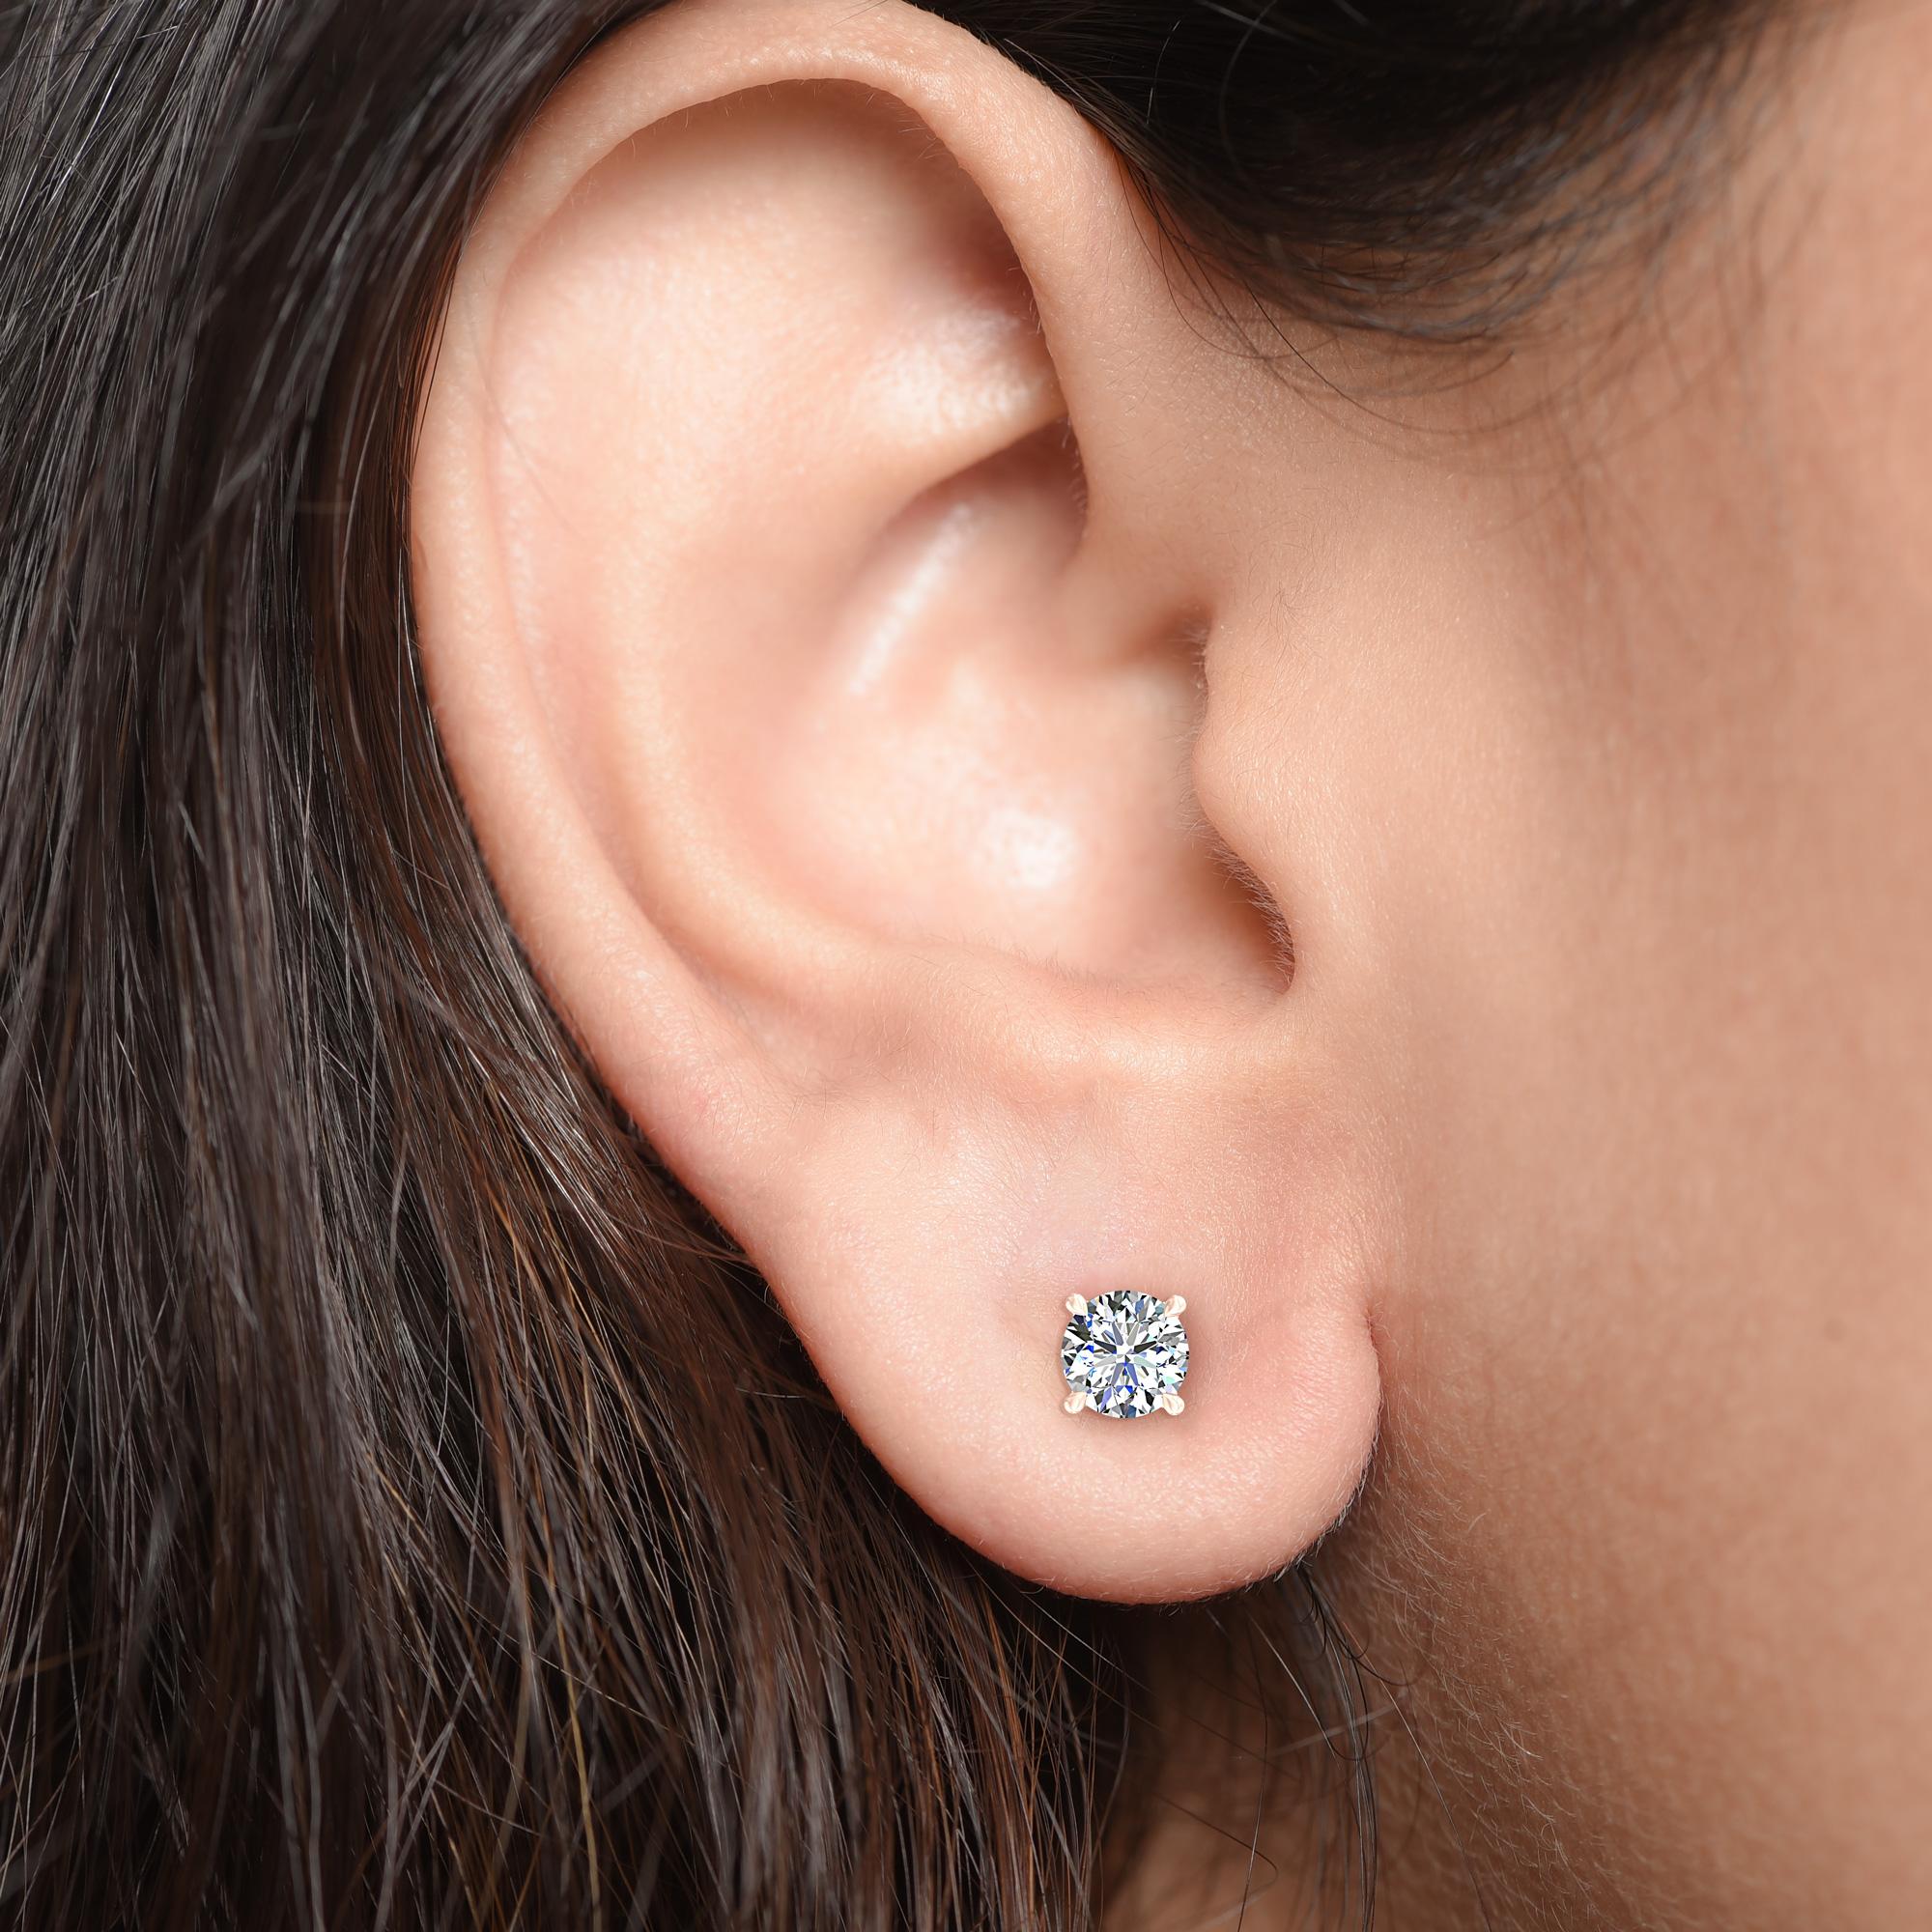 Diese klassischen GIA-zertifizierten Diamantohrstecker präsentieren ein Paar perfekt aufeinander abgestimmter Diamanten mit einem Gesamtgewicht von 0,68 Karat. Die aus 18-karätigem Roségold gefertigten vierzackigen Ohrringe sind auch in Gelb- und